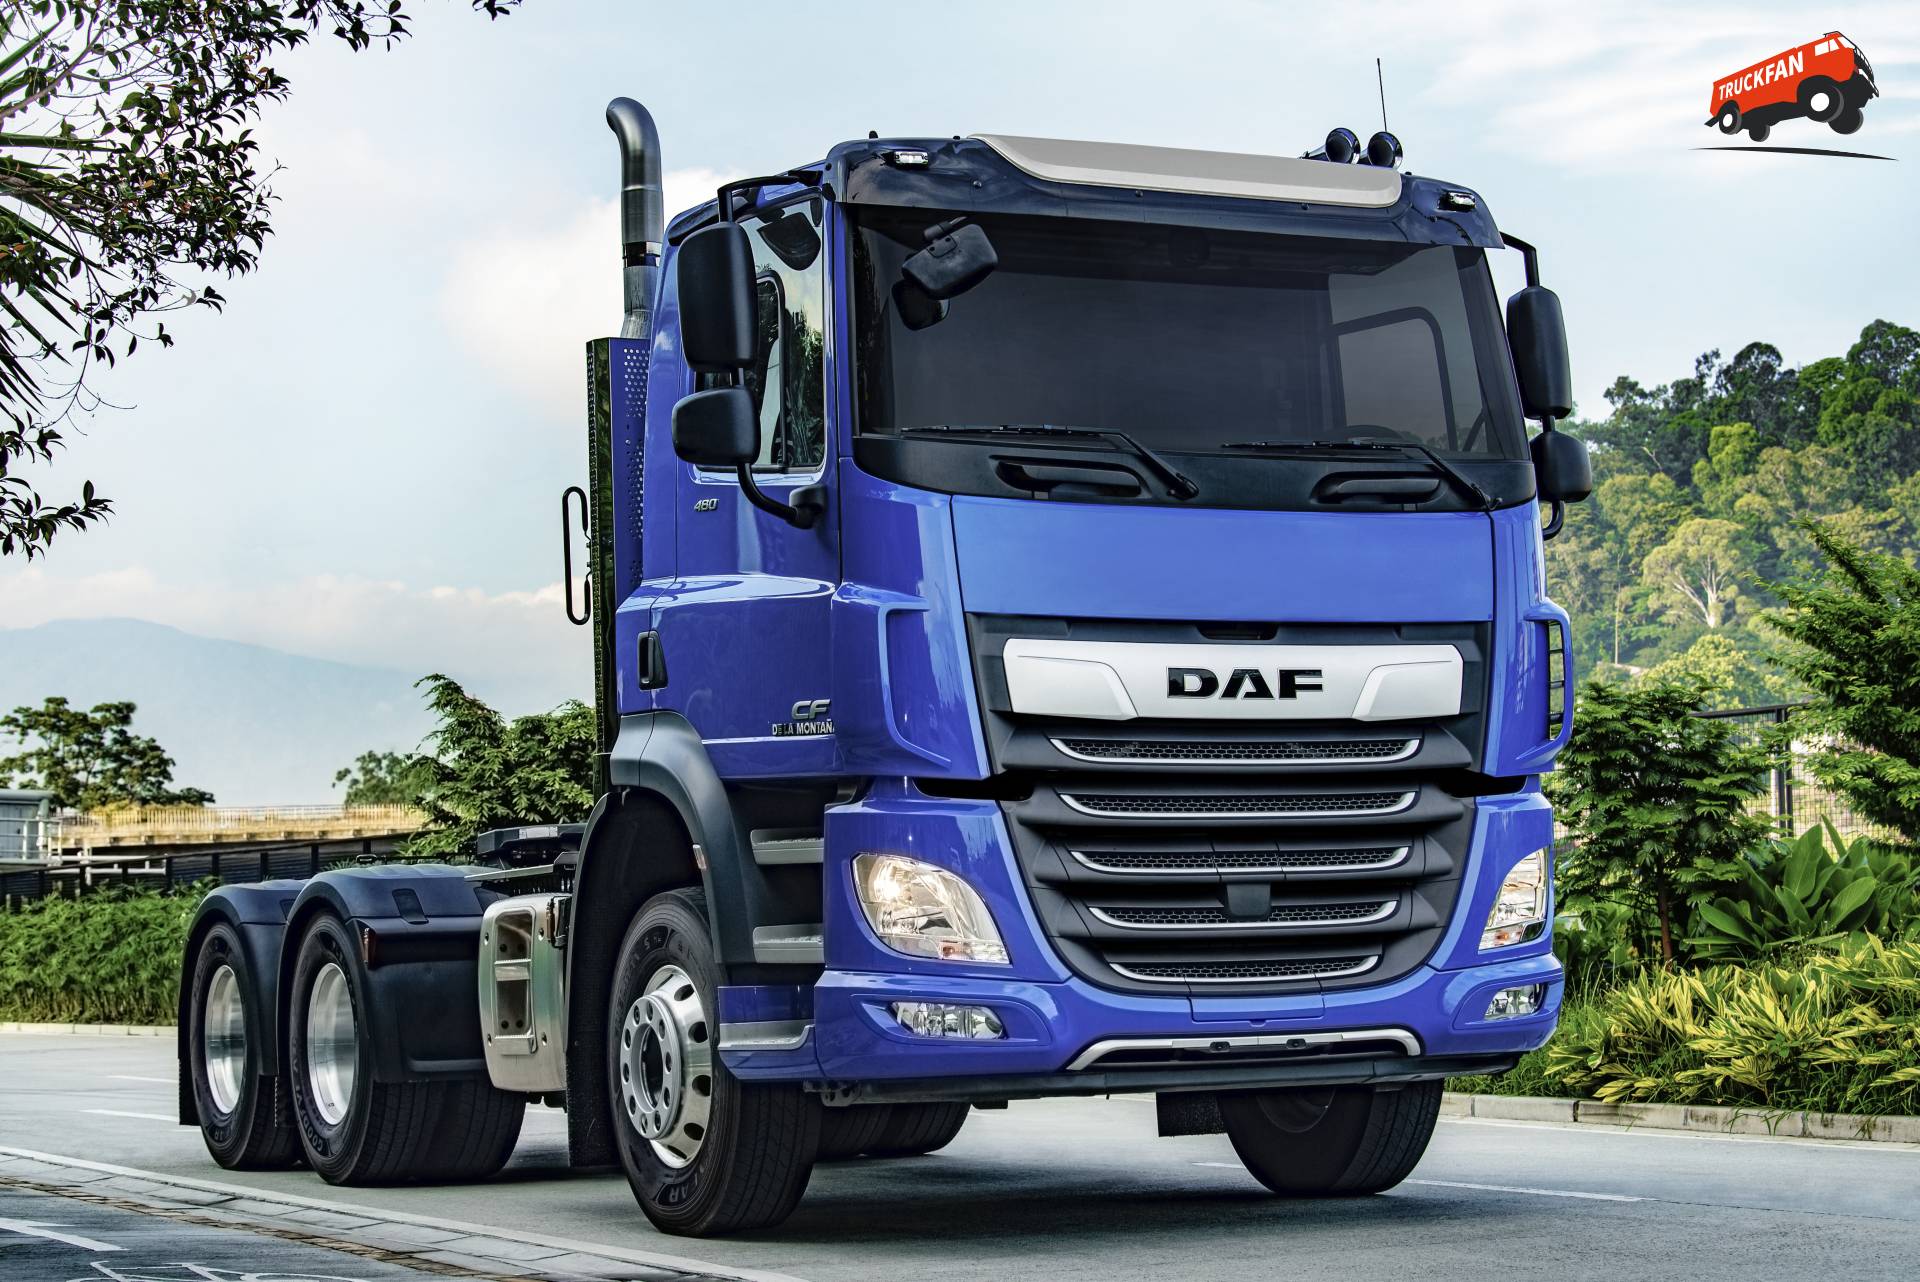 DAF verscheept 200 heavy duty trucks naar Colombia Het is de grootste order van DAF Trucks ooit...